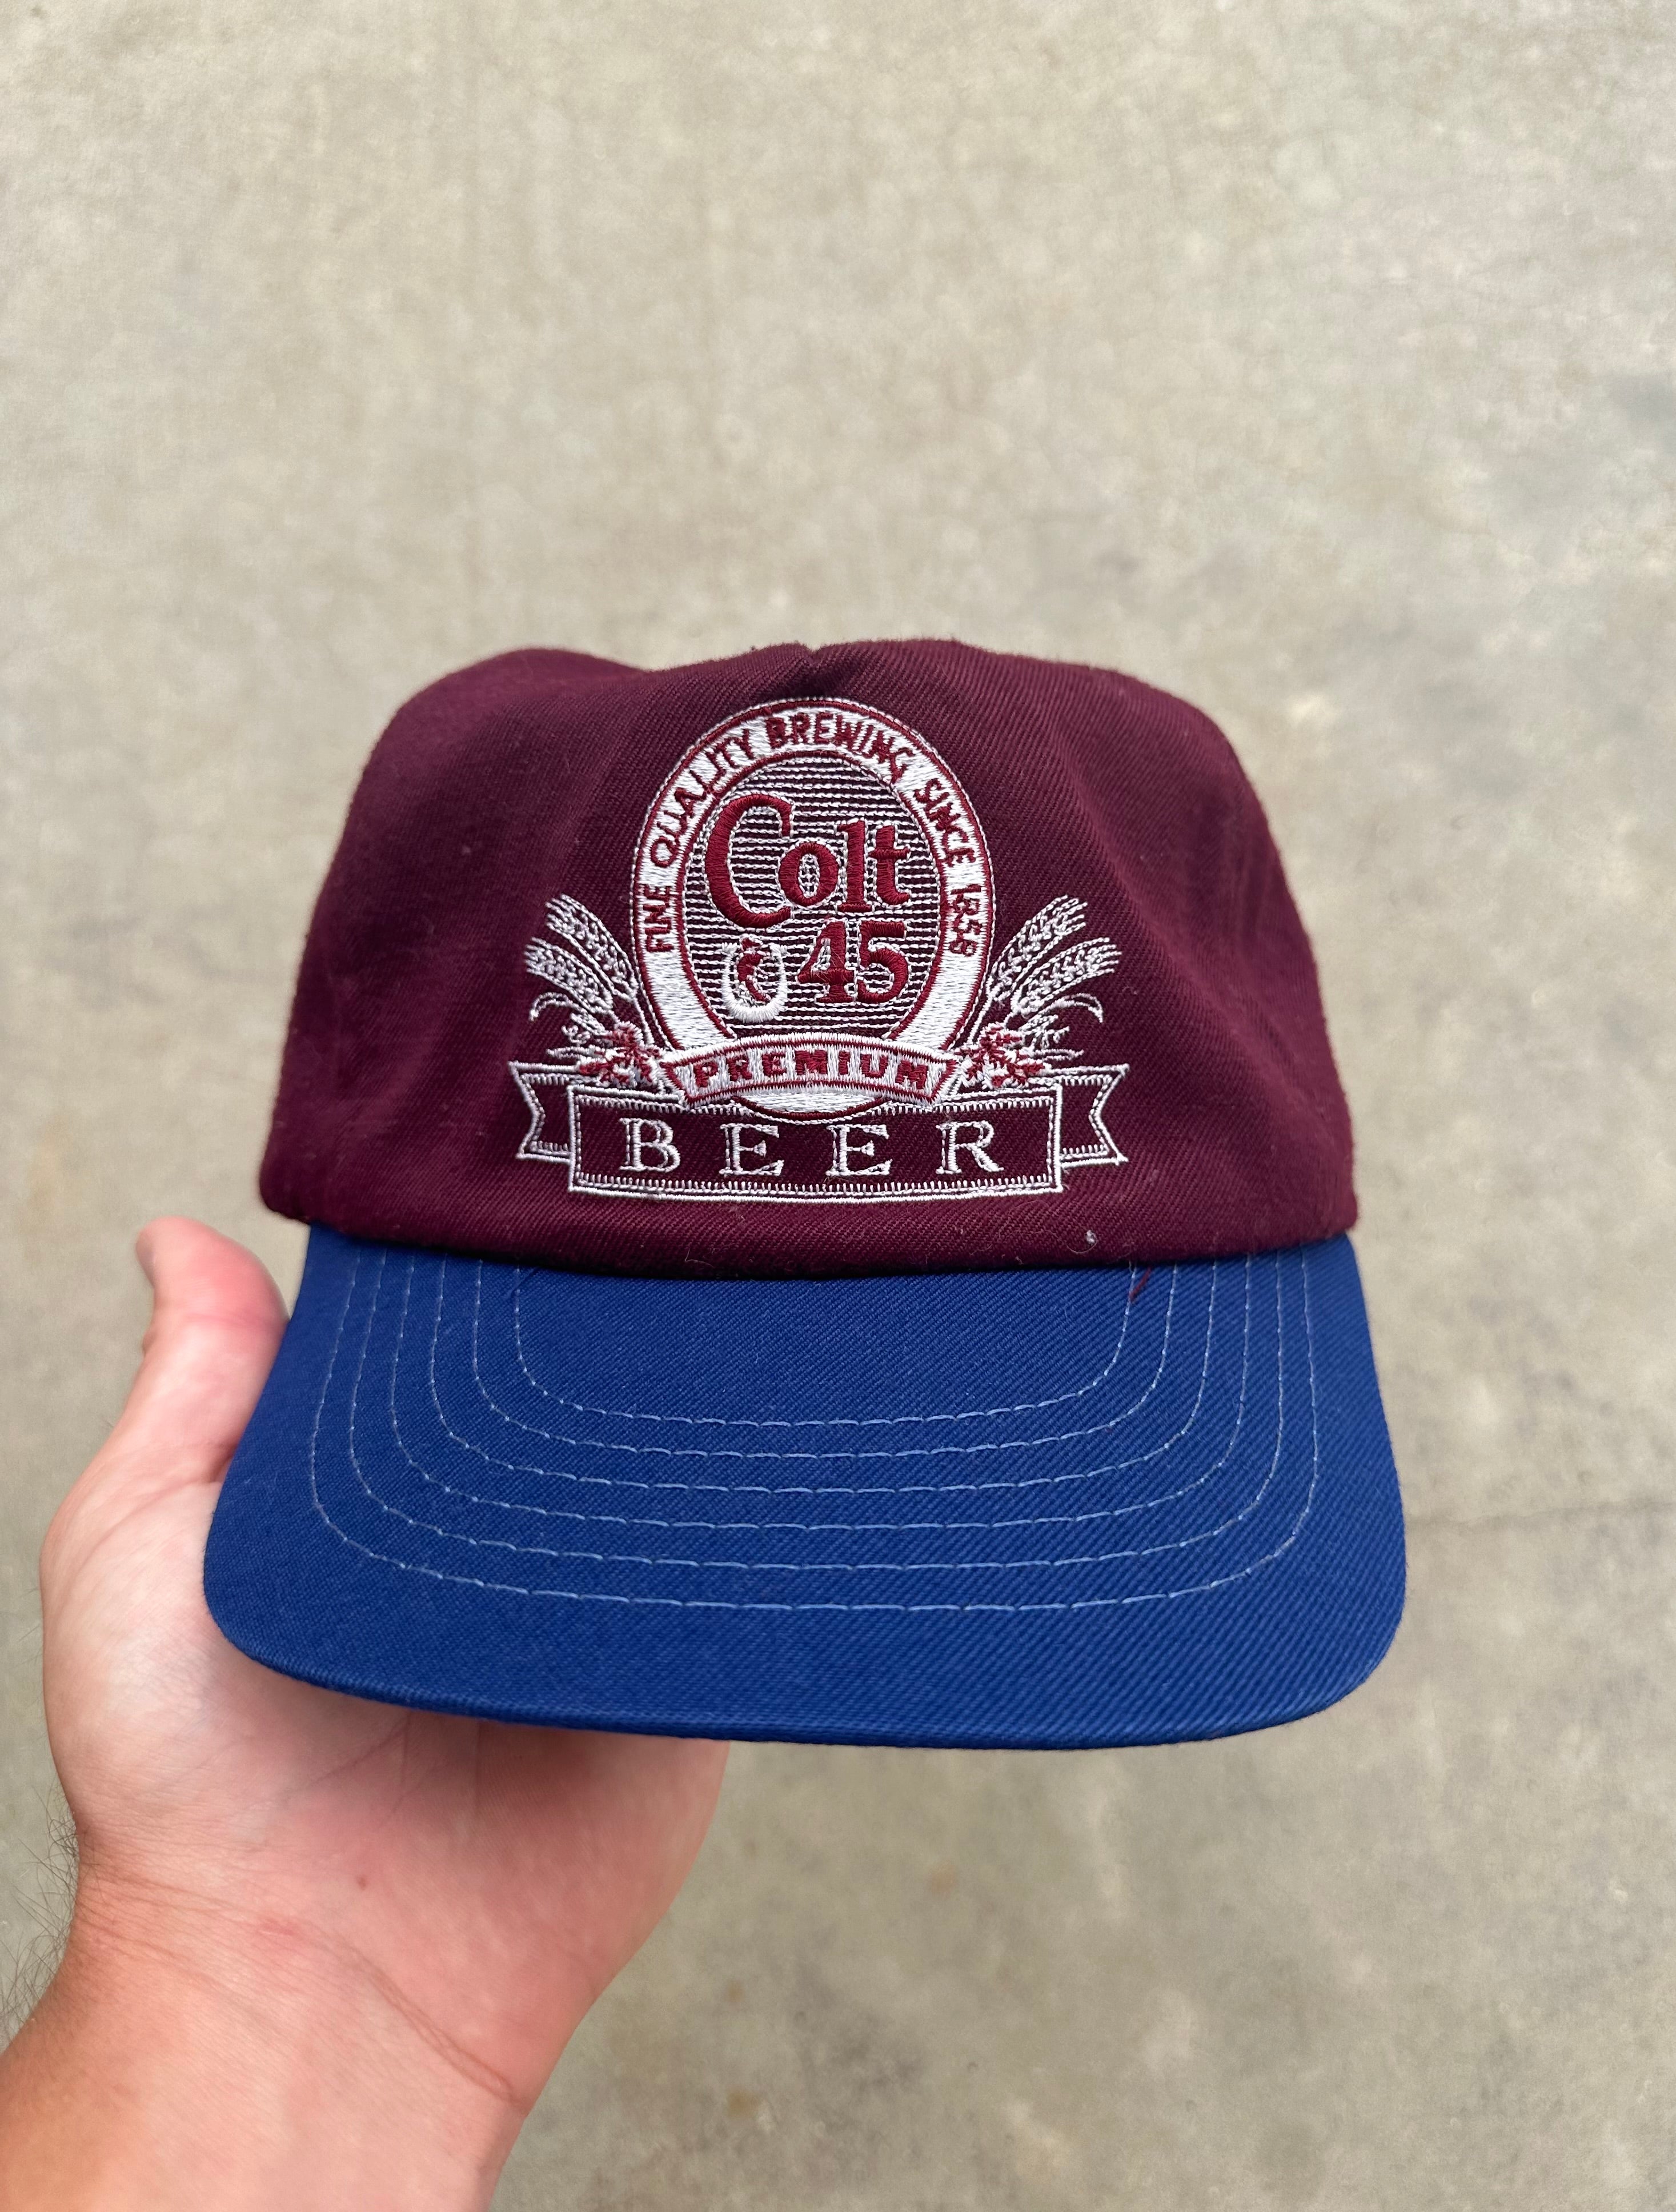 1980s Colt .45 Beer Trucker Hat